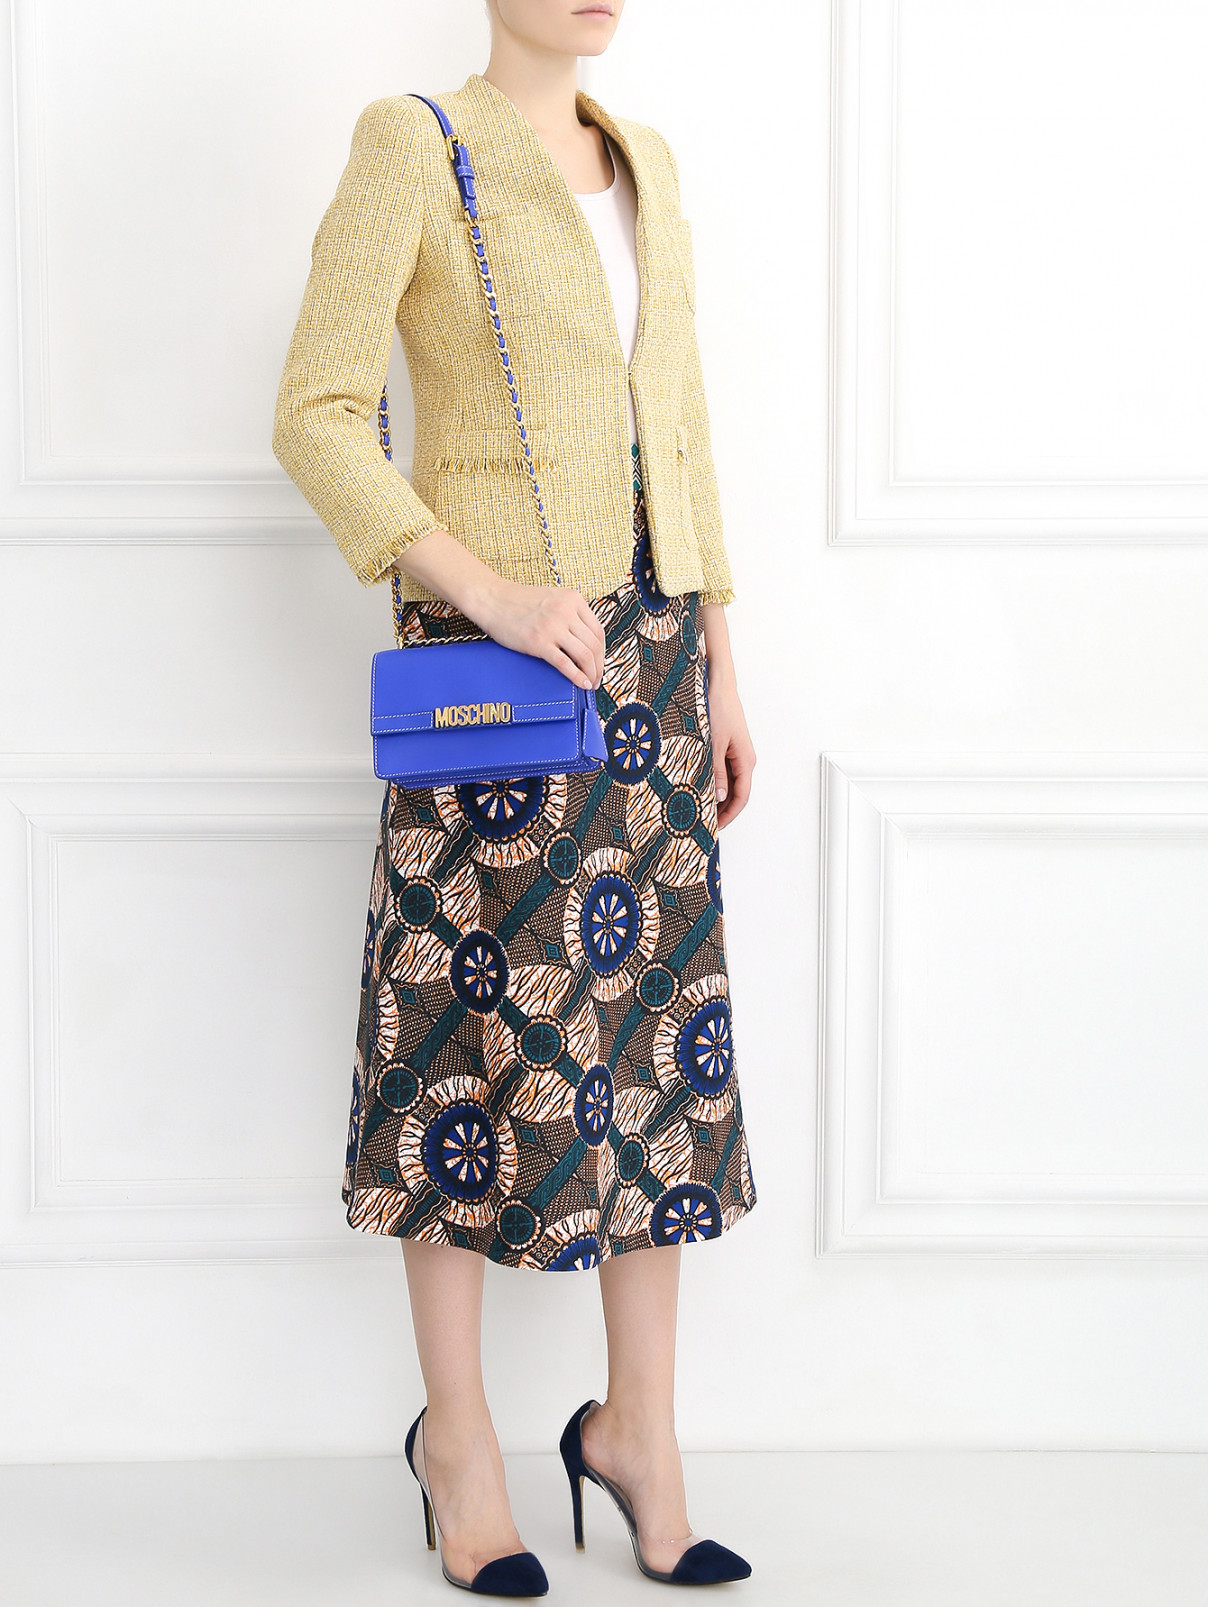 Сумка из кожи на цепочке Moschino Couture  –  Модель Общий вид  – Цвет:  Синий